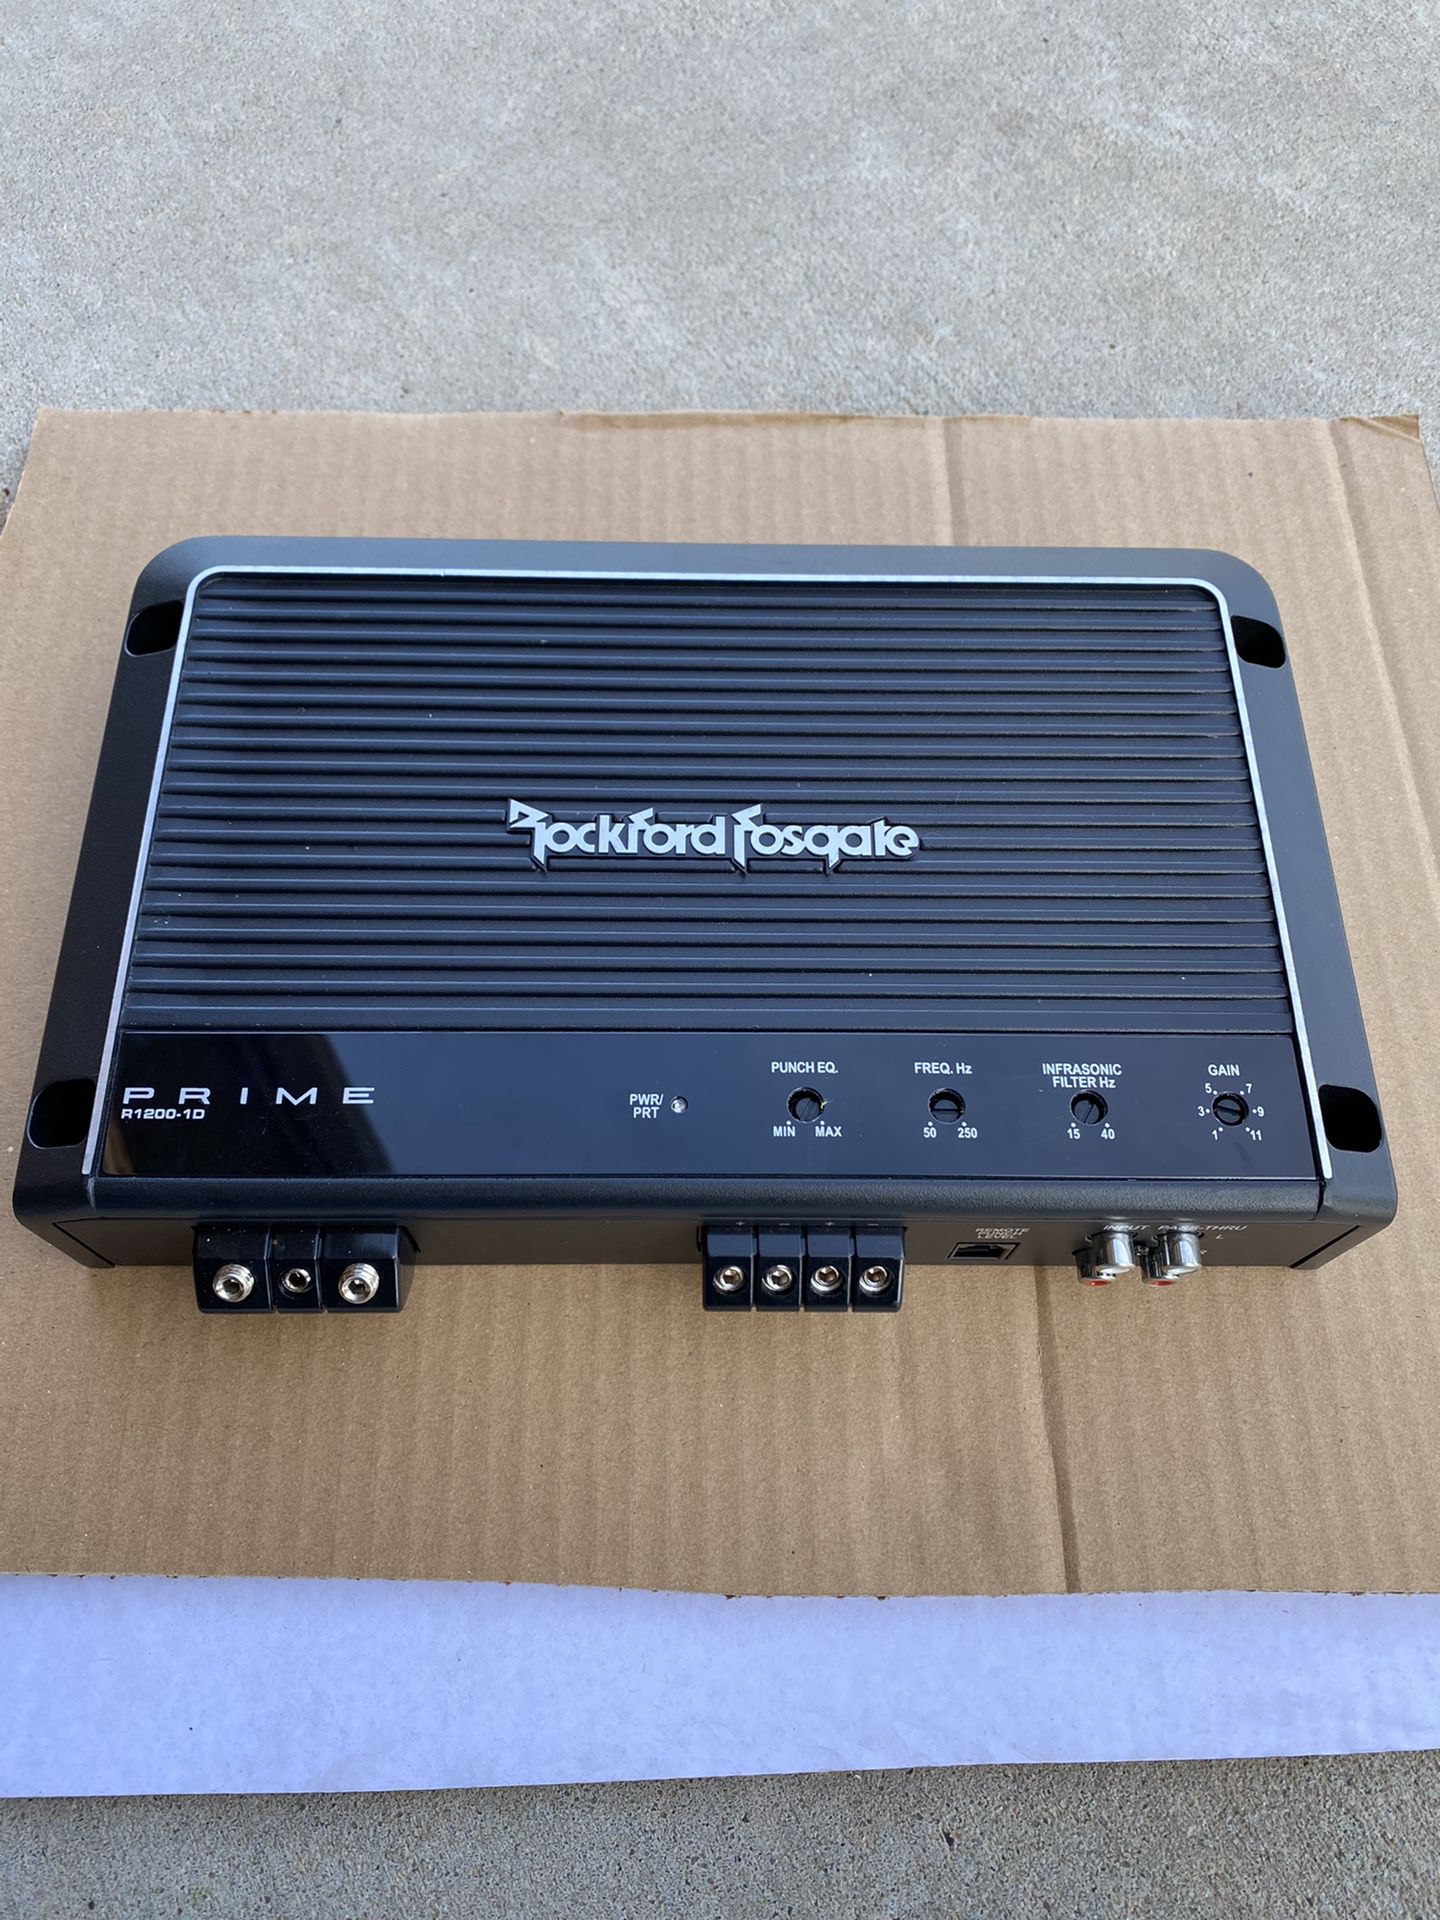 Rockford Fosgate Prime R1200-1D subwoofer amplifier 